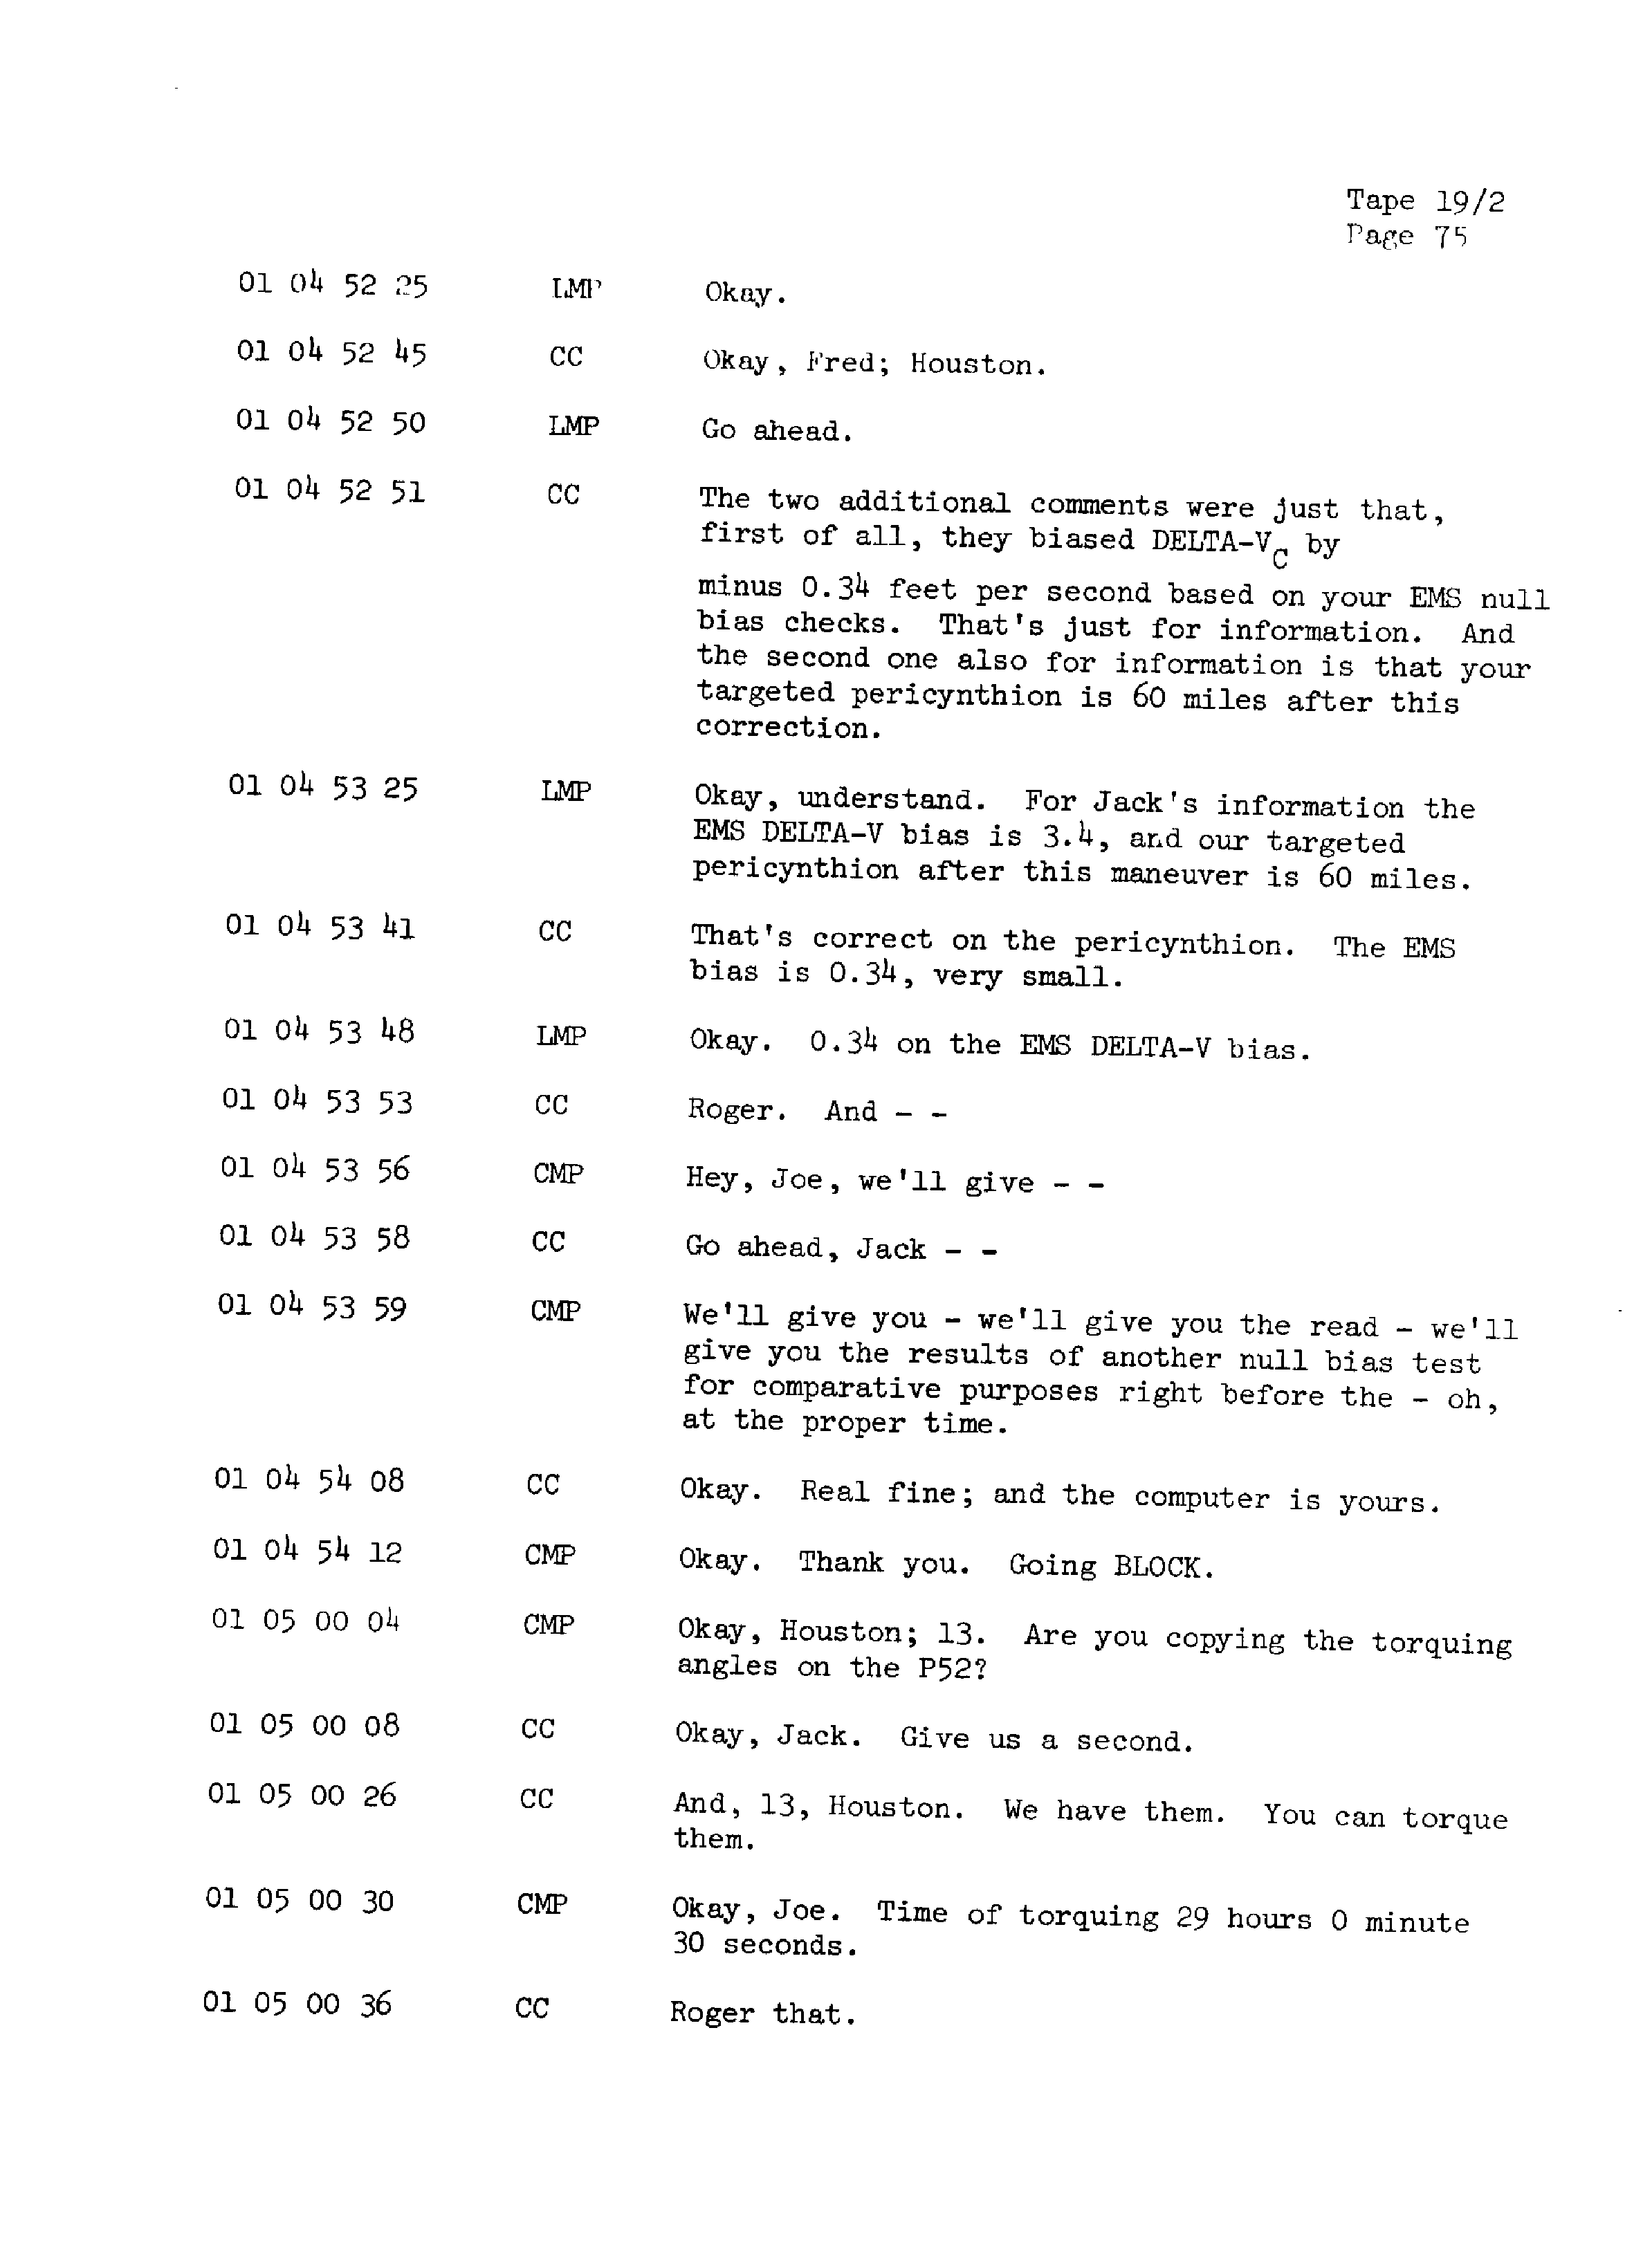 Page 82 of Apollo 13’s original transcript